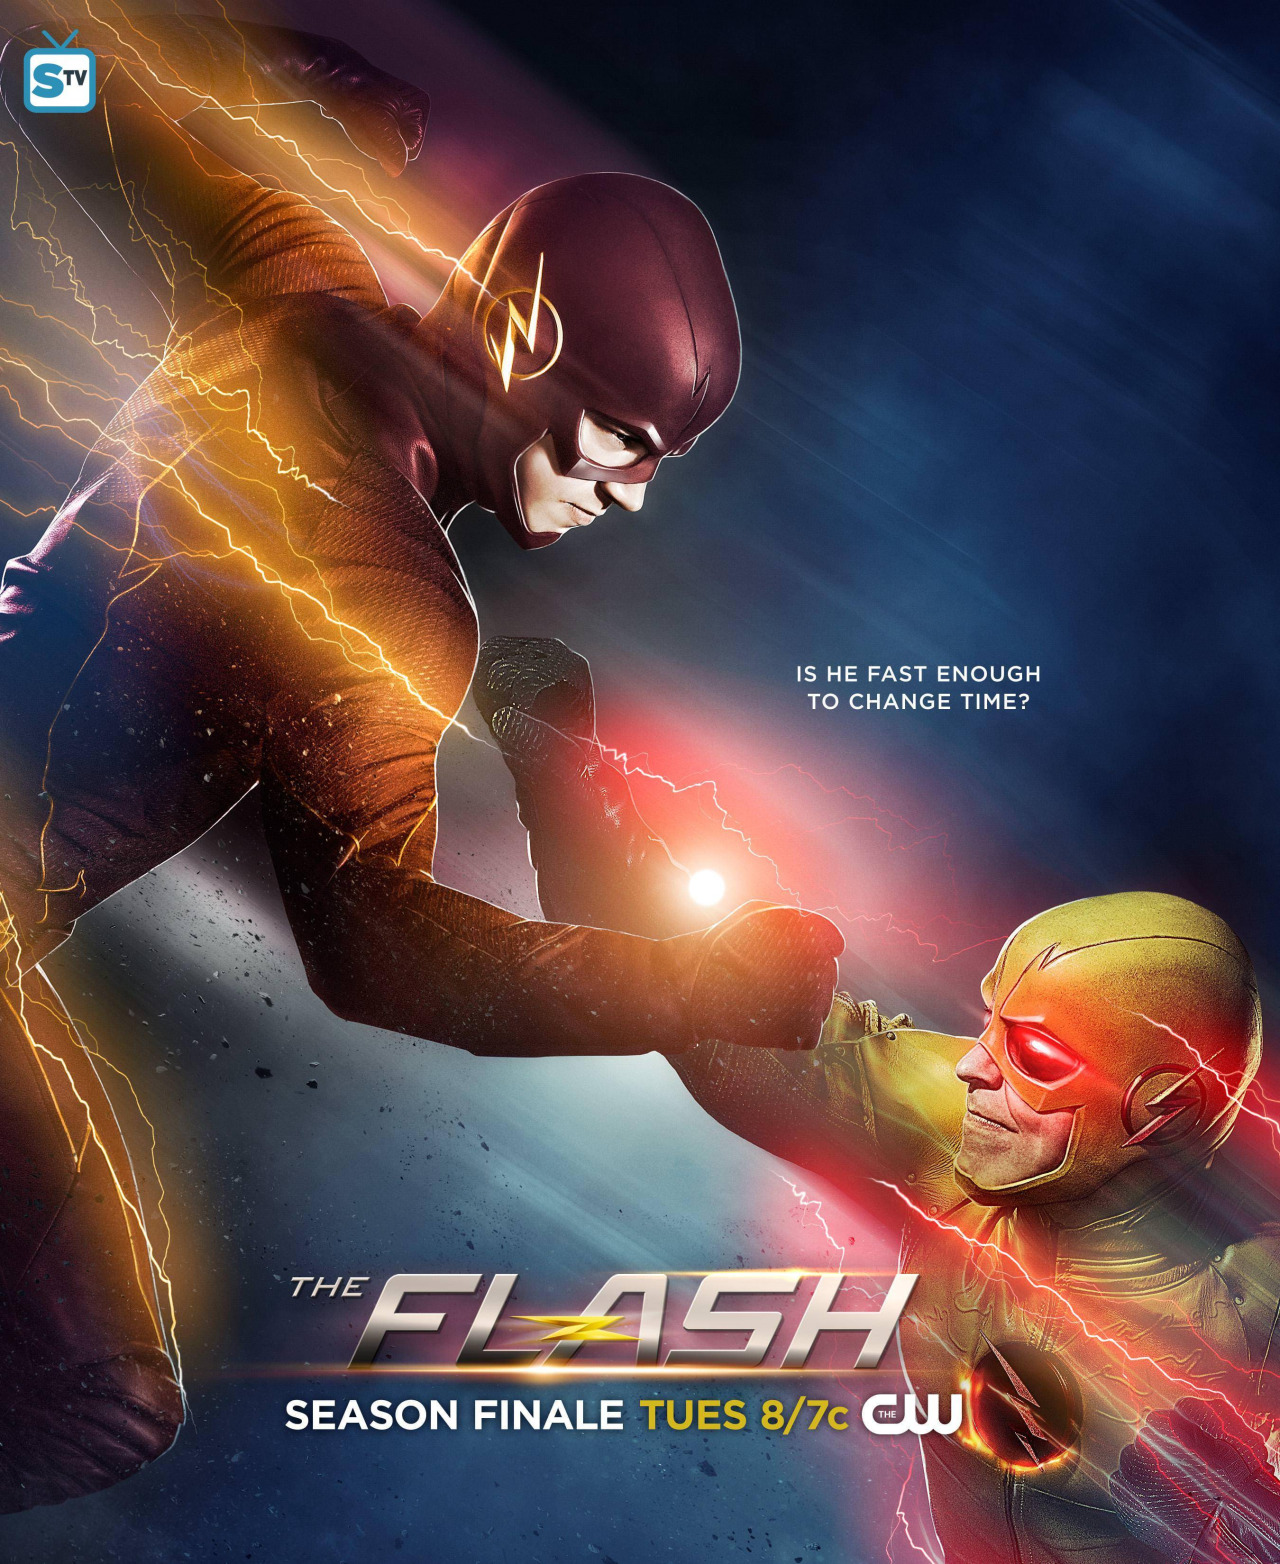 The Flash Cw Picha Vs Reverse Finale Poster